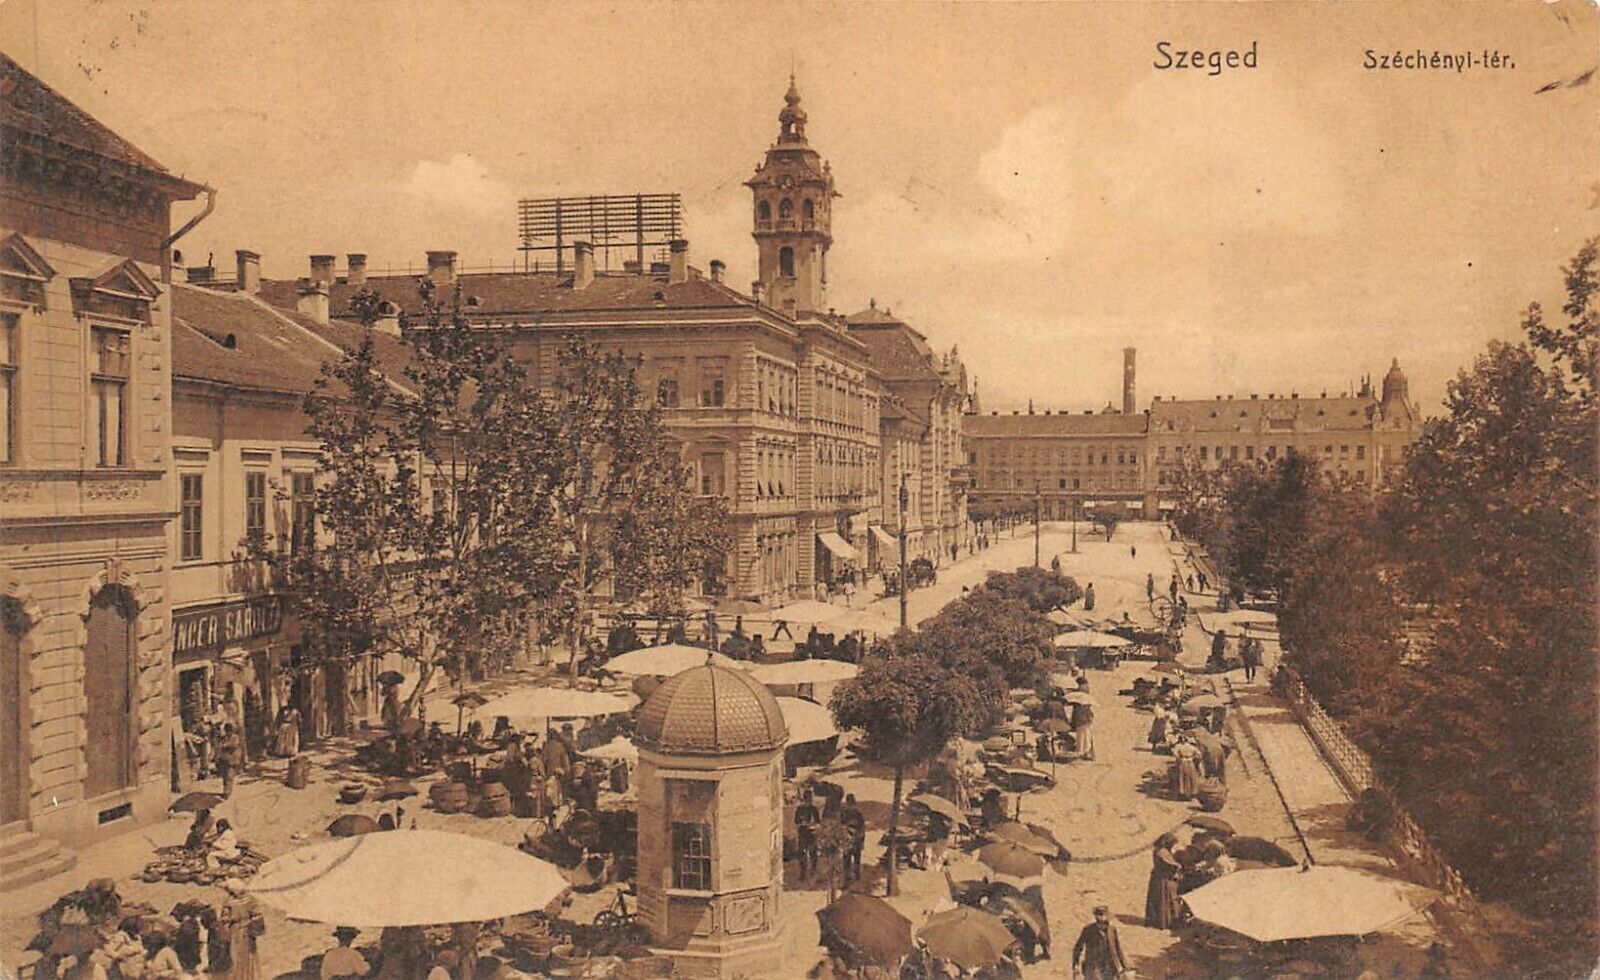 SZEGED - Széchényi Square